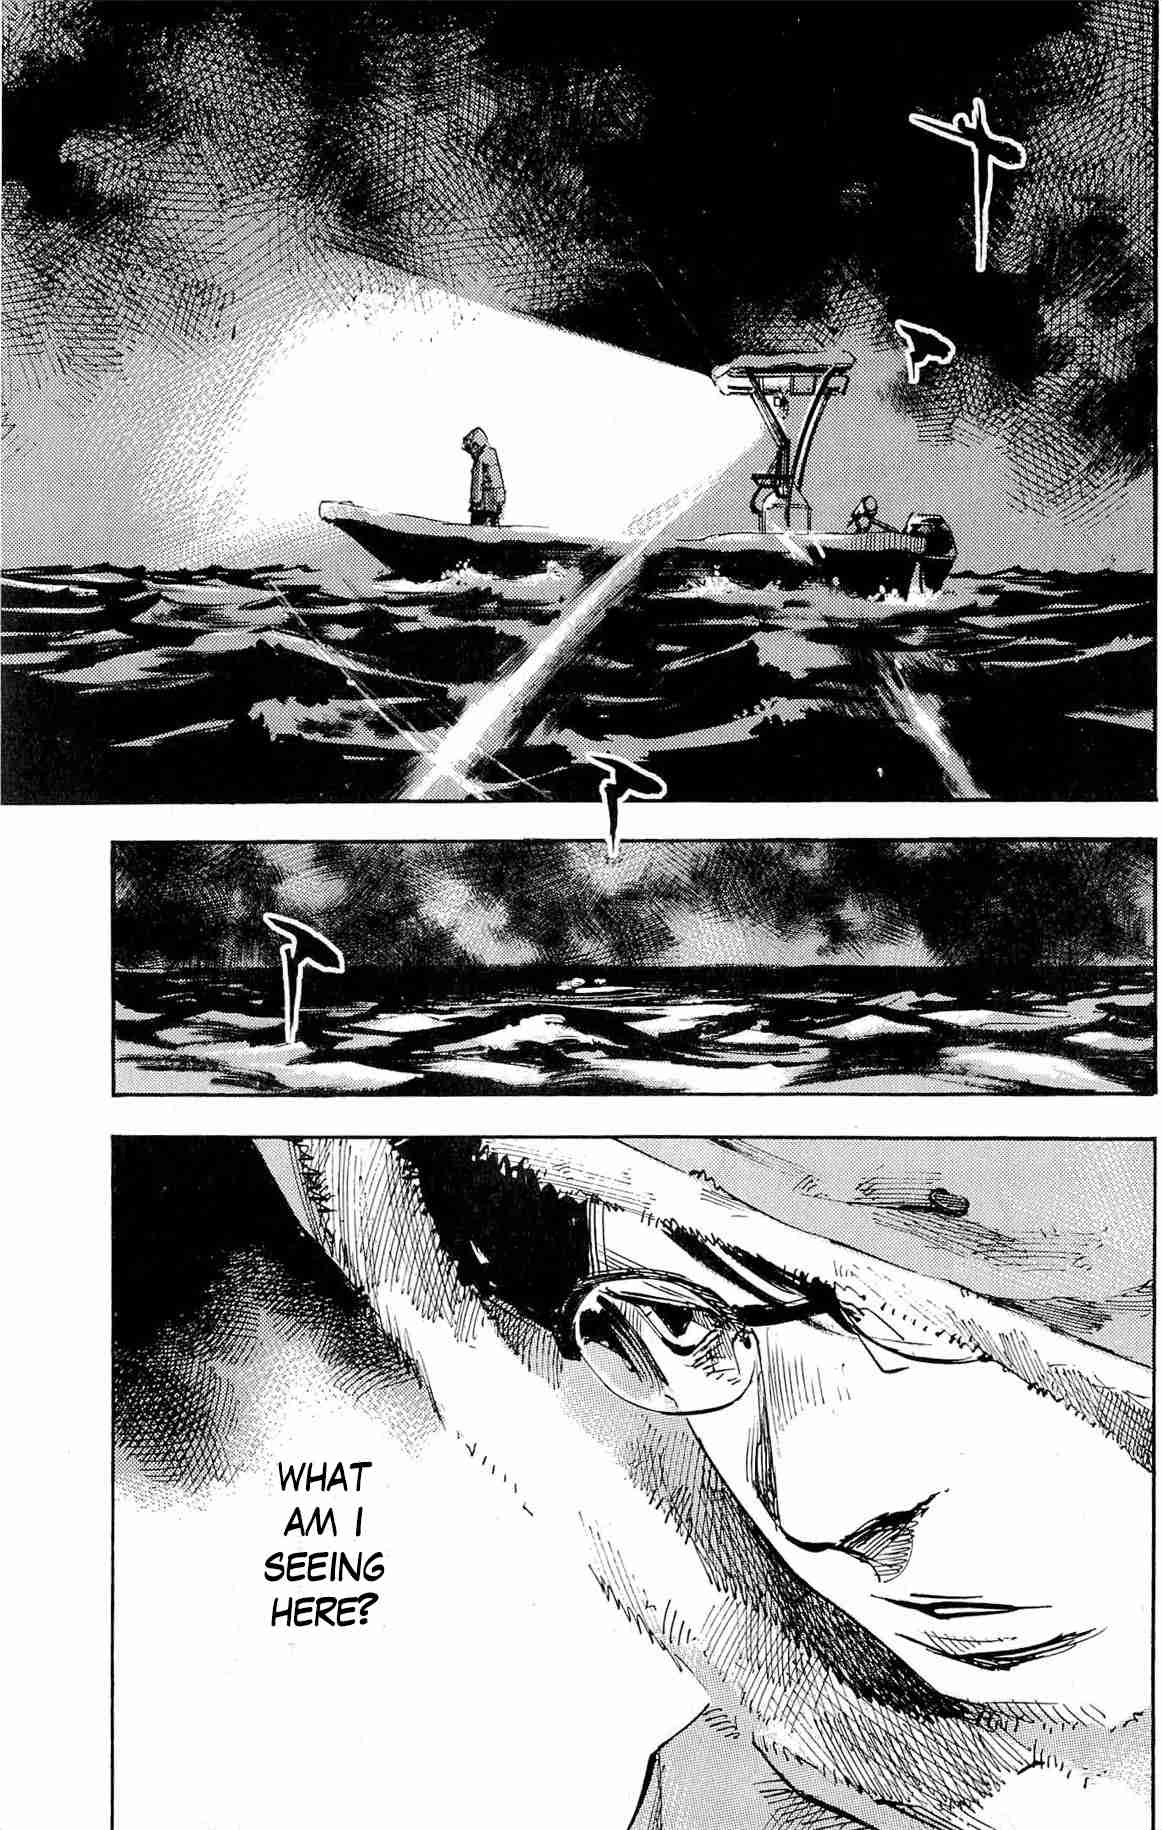 Jiraishin Diablo Vol. 2 Ch. 9 The Lost Island / Part 9 "Access"